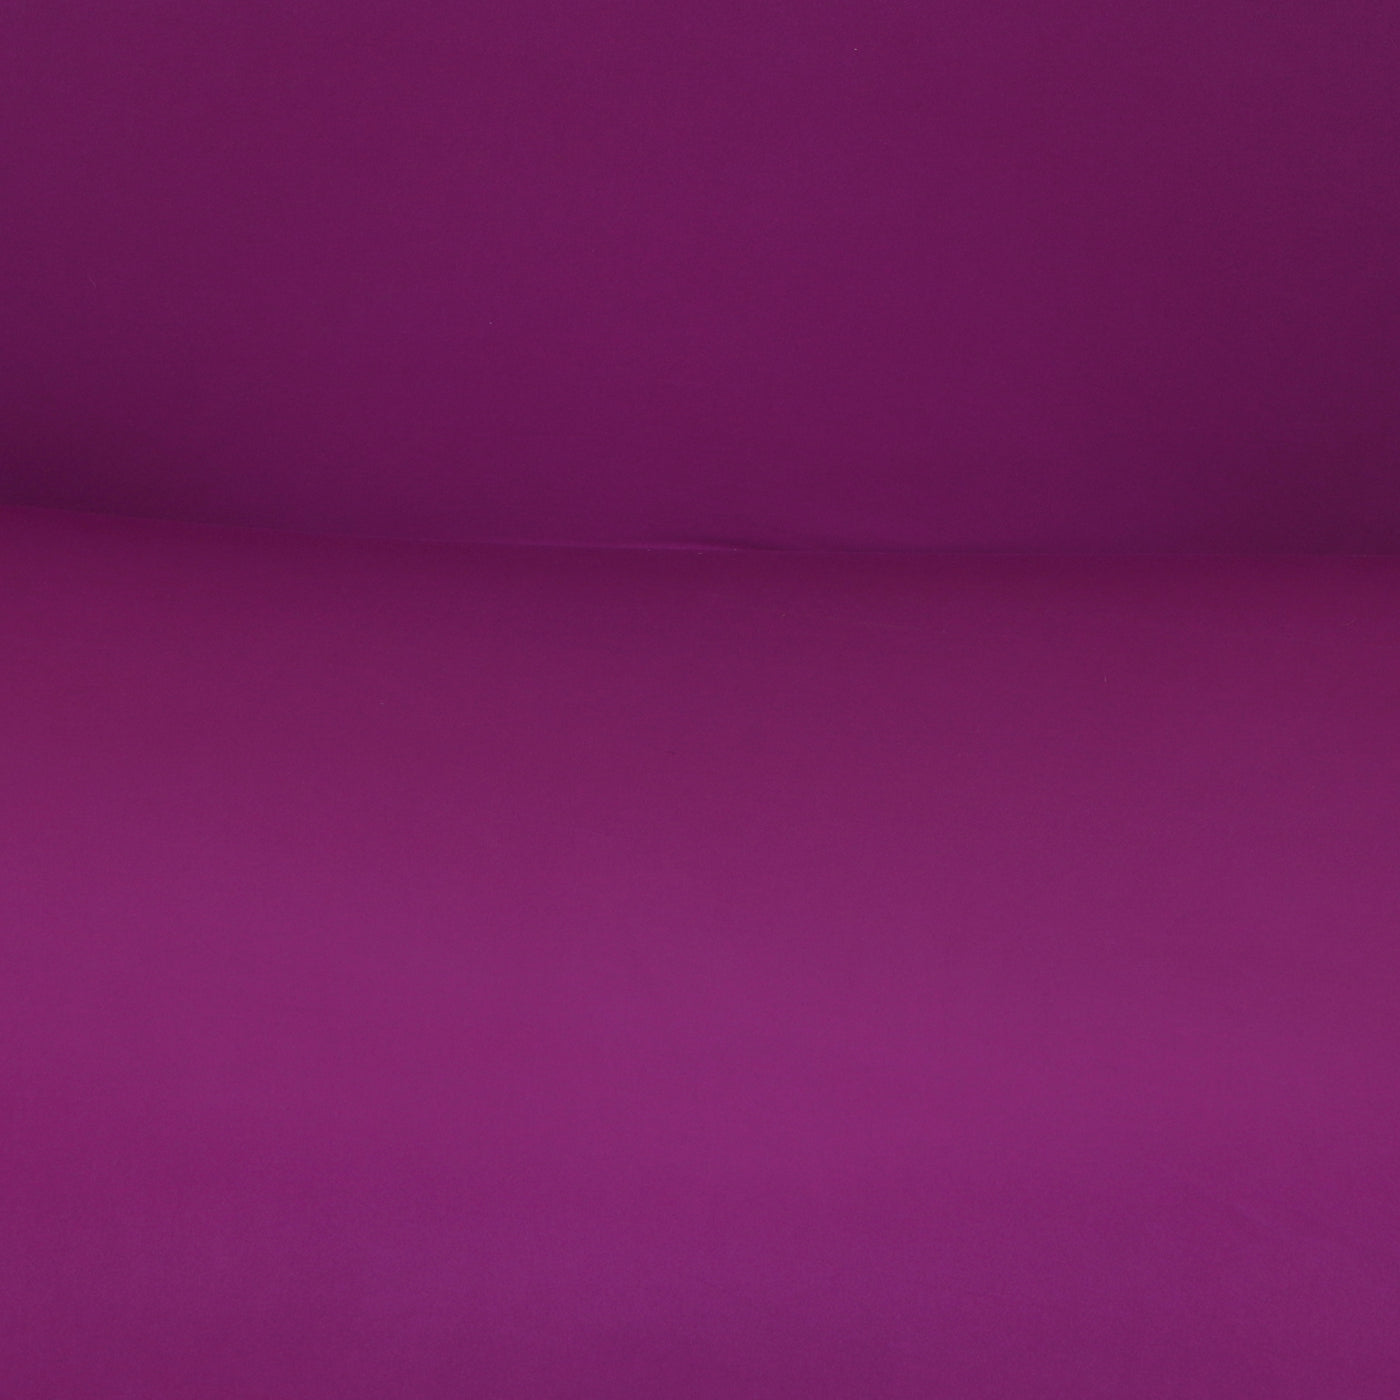 Sofa Slipcover - Grape